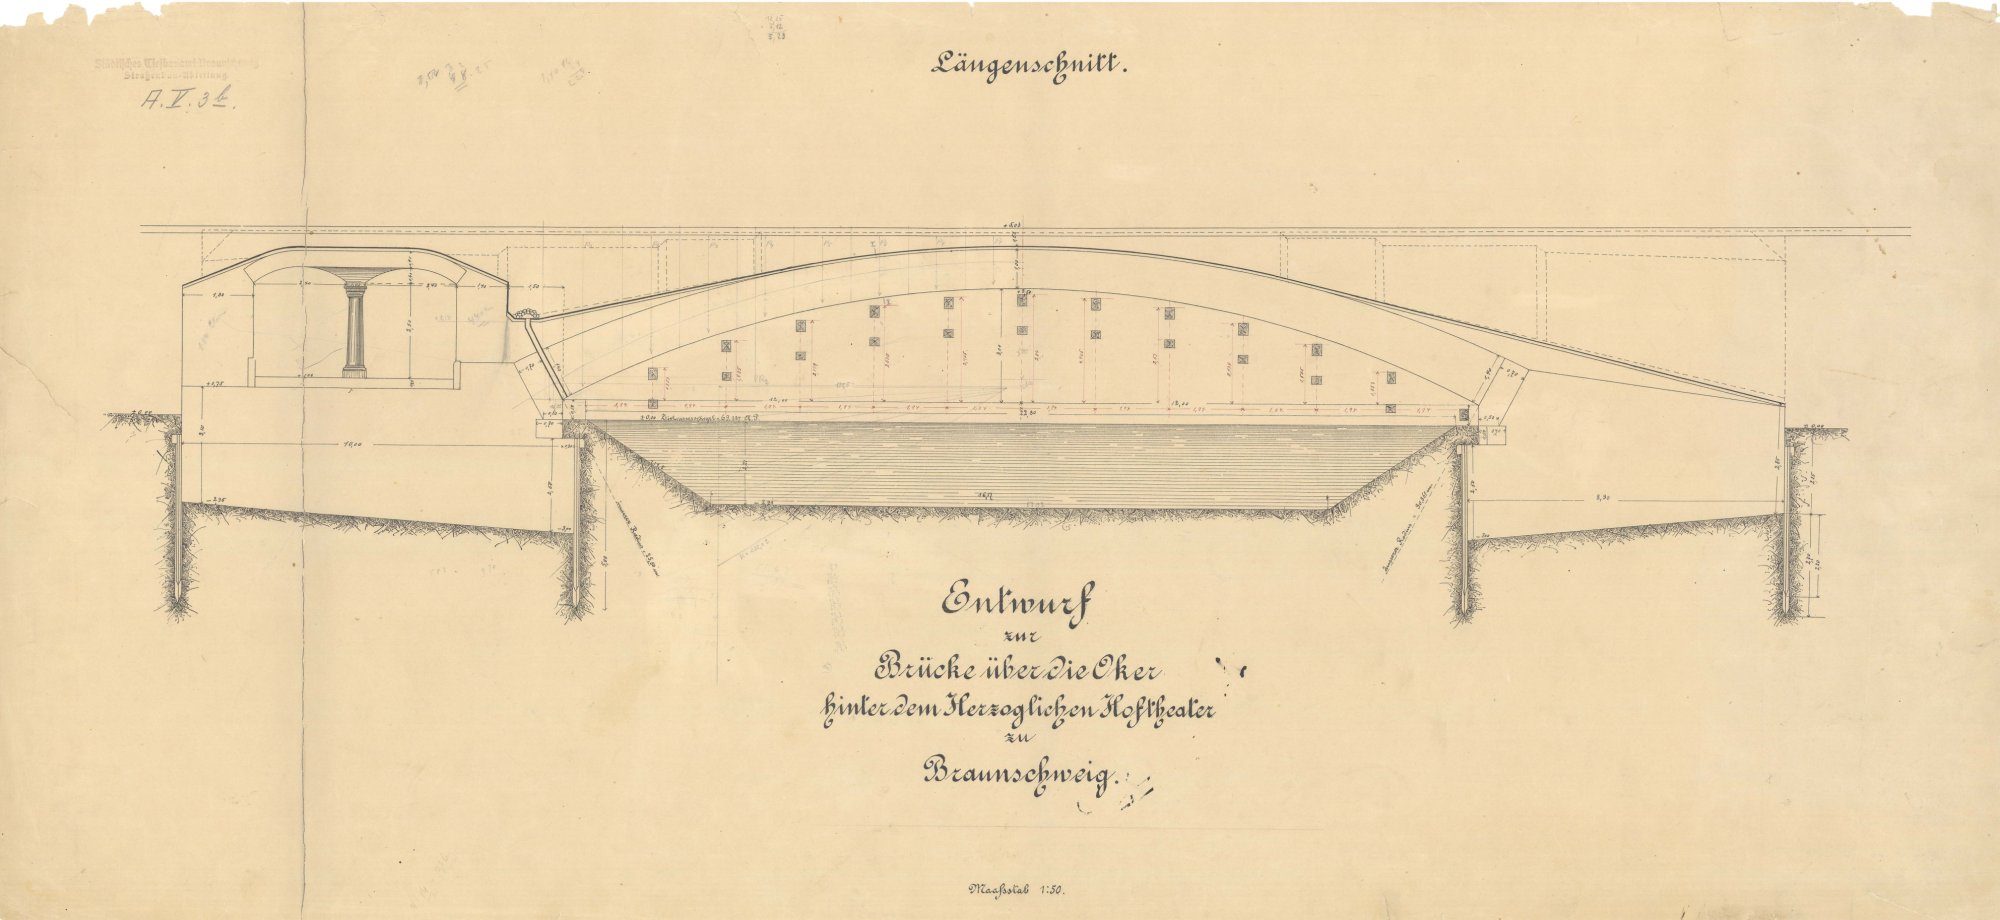 Theaterbrücke, Längsschnitt, 1887 (Wird bei Klick vergrößert)